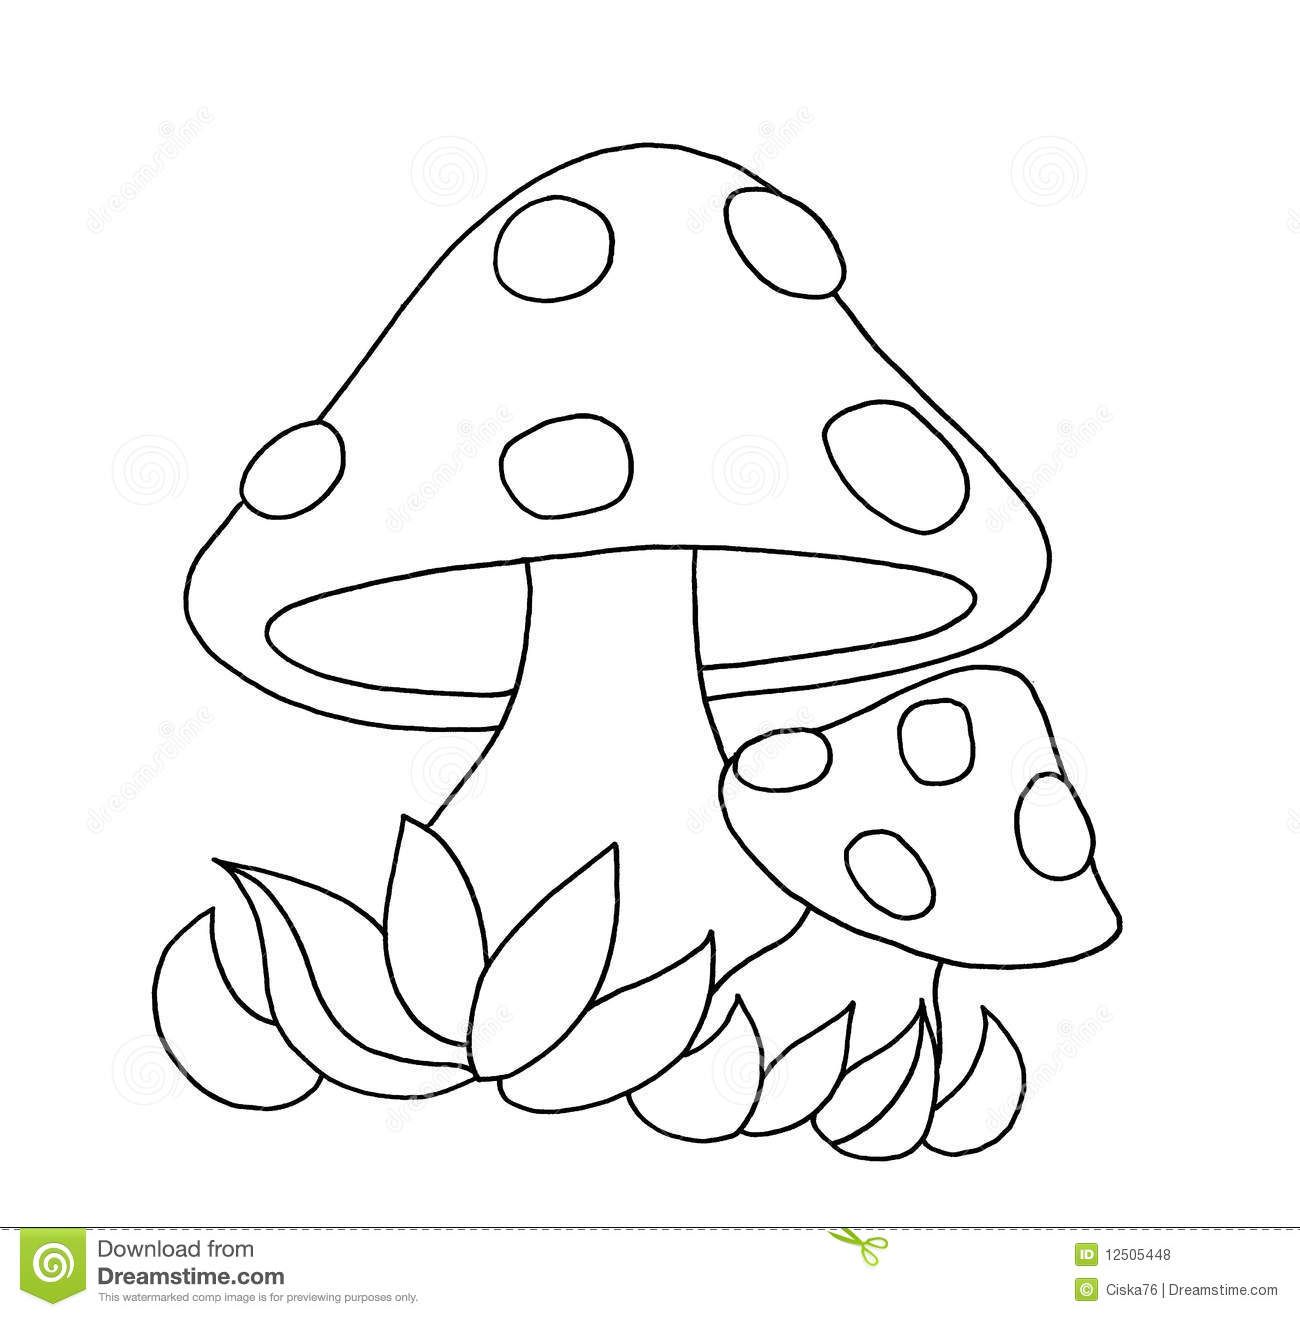 Прикольные картинки грибочки для детей раскраски (27)